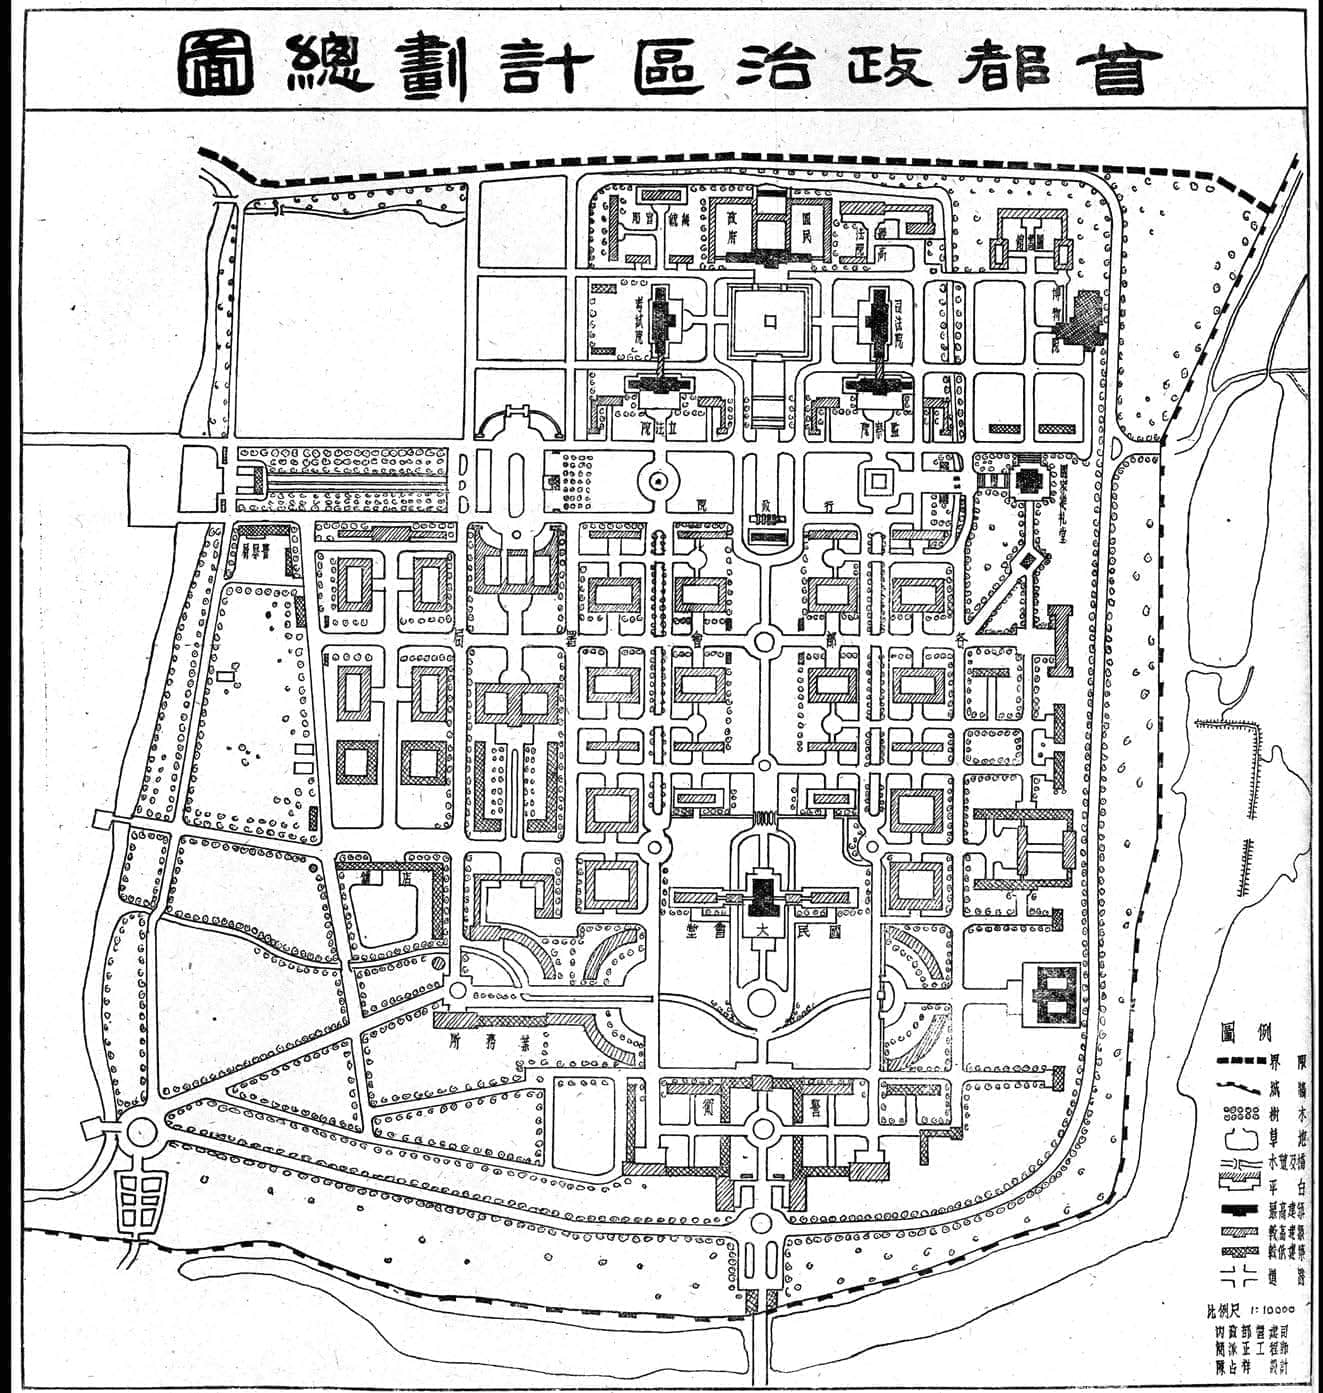 陈占祥和娄道信规划的“首都政治区计划总图”，1948 年。［《公共工程专刊》1948 年2期］